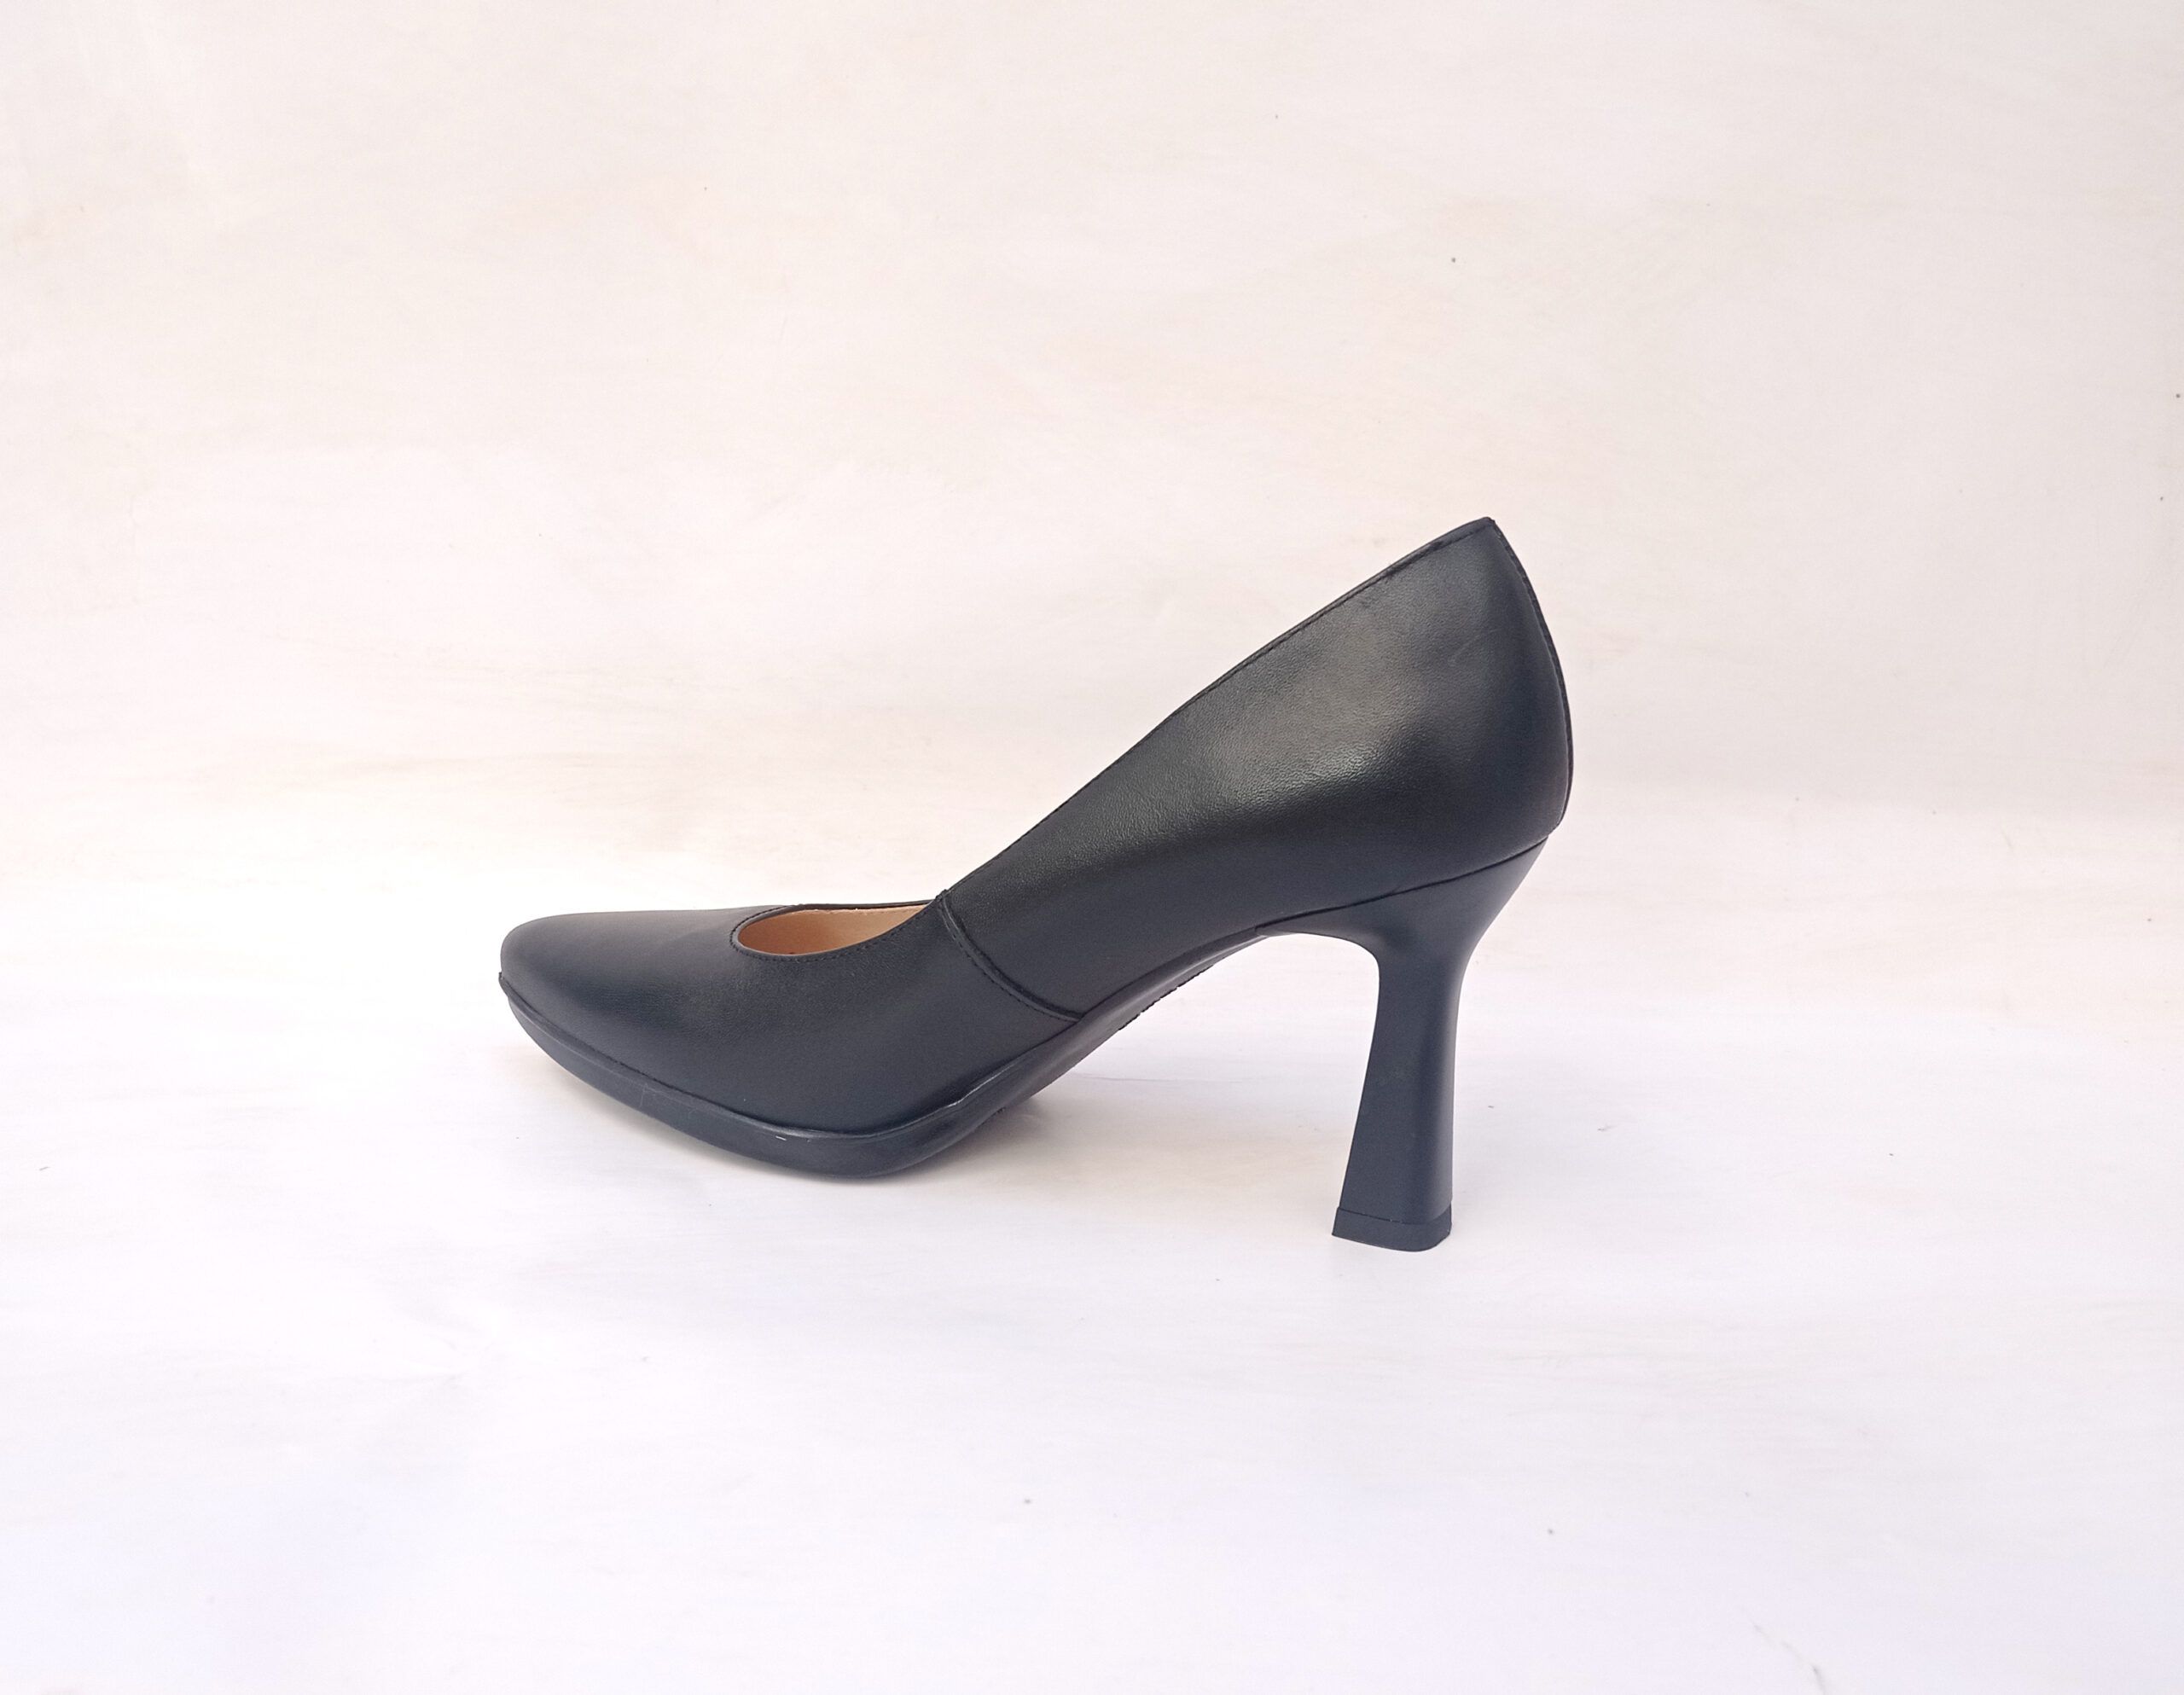 Zapatos de salón Desireé Shoes Syra8 color negro